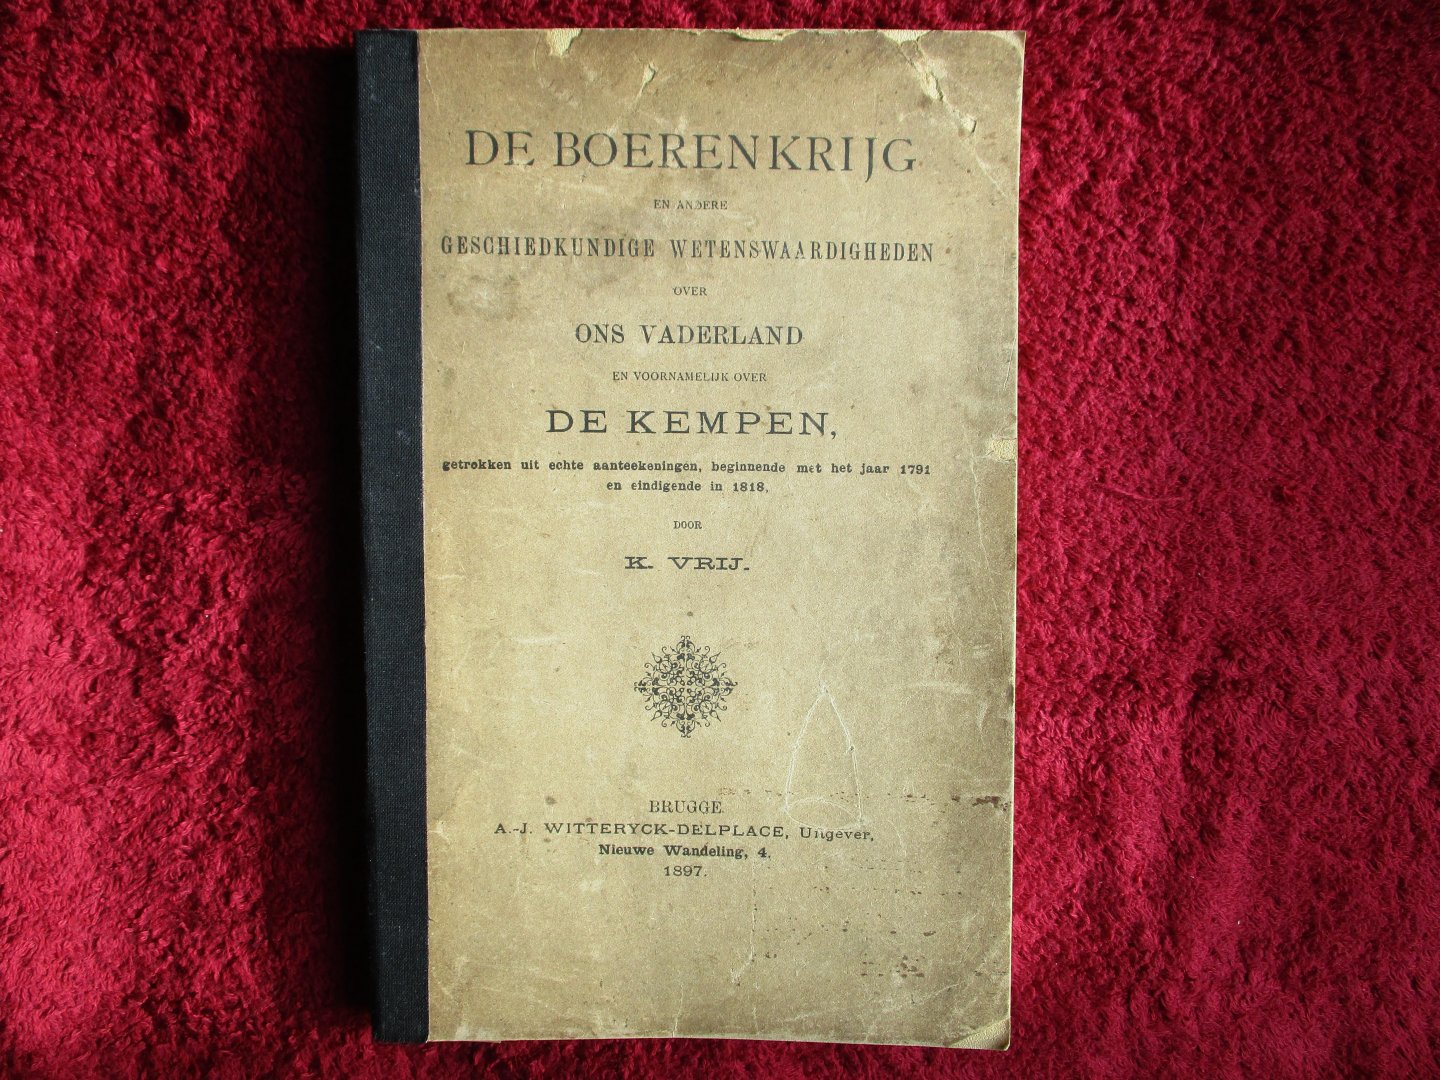 Vrij, K. - De boerenkrijg en andere geschiedkundige wetenswaardigheden over ons vaderland en voornamelijk de Kempen, getrokken uit echte aanteekeningen, beginnende met het jaar 1791 en eindigende in 1818.